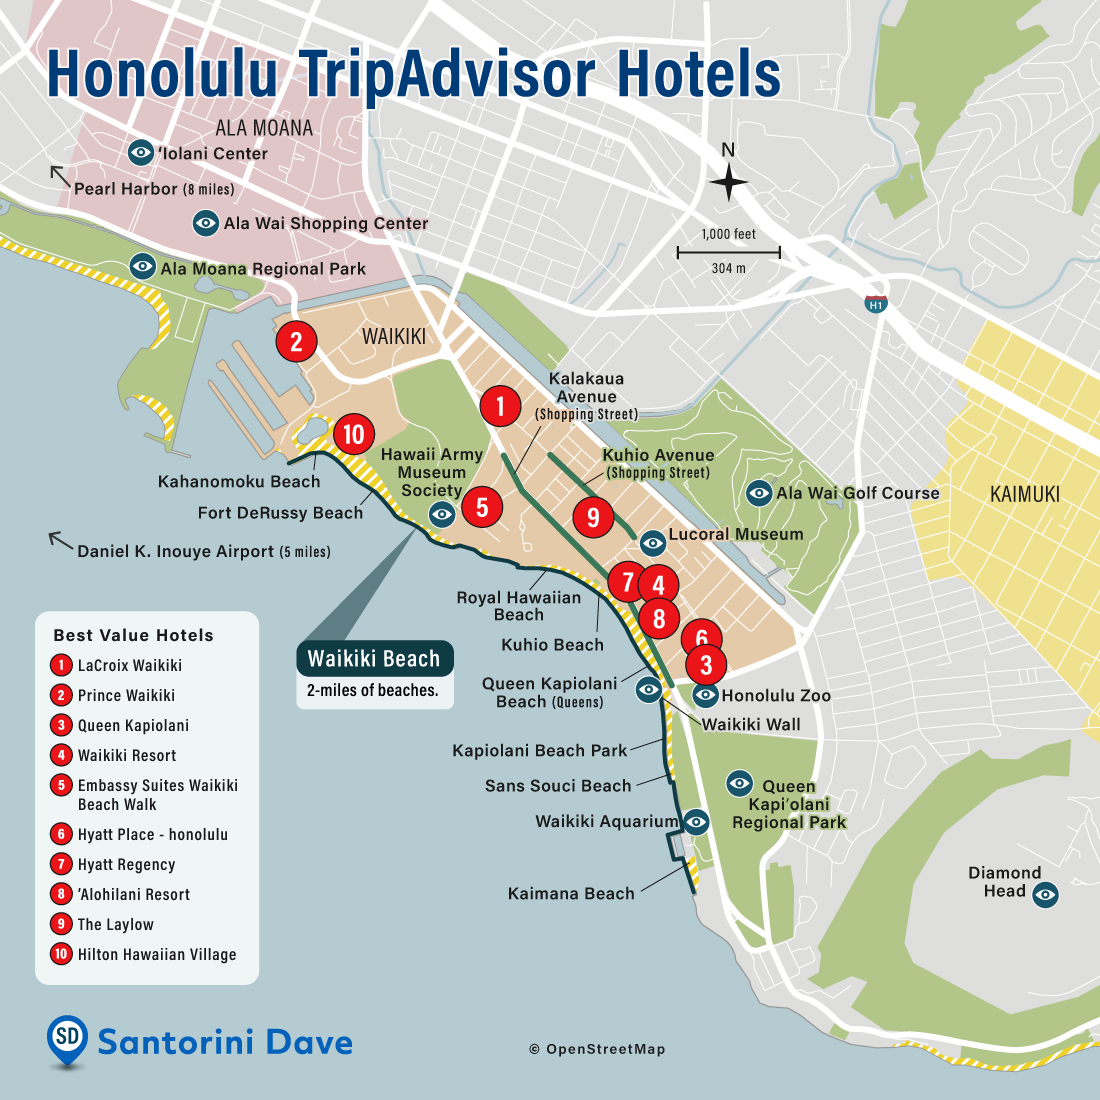 Honolulu TripAdvisor Hotels